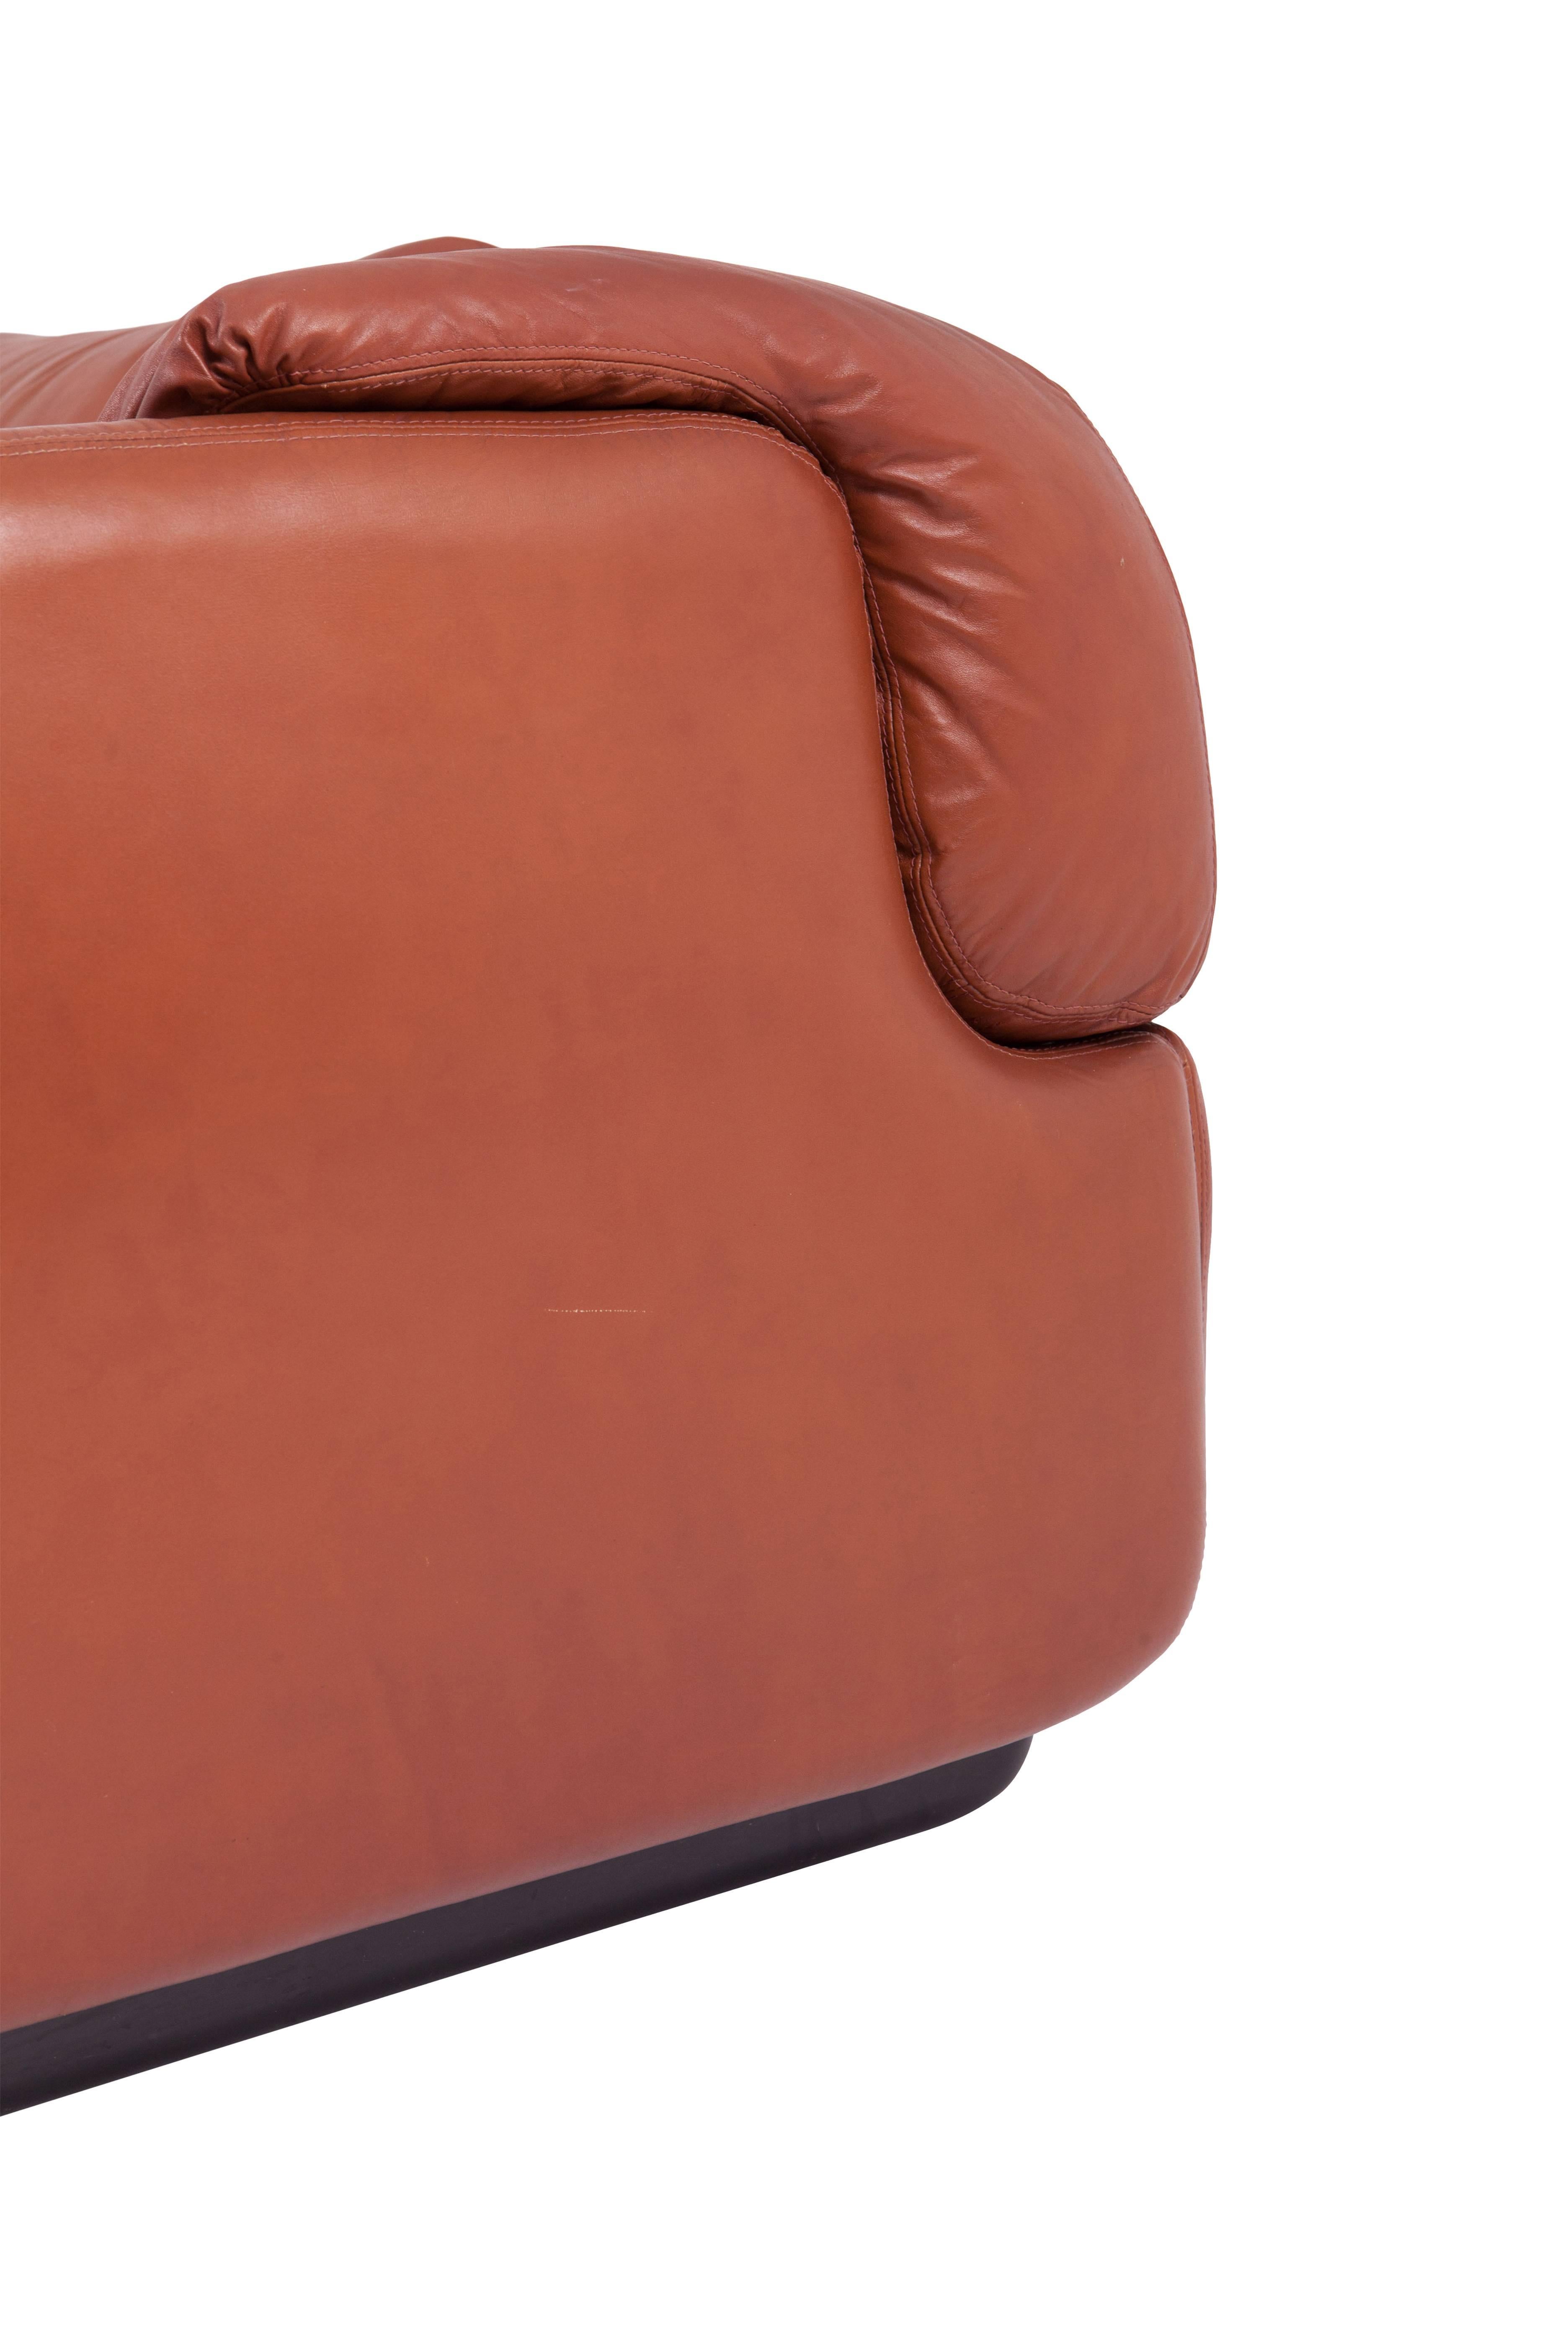 Saporiti Vertrauliches Sofa aus cognacfarbenem Leder von Alberto Rosselli 1